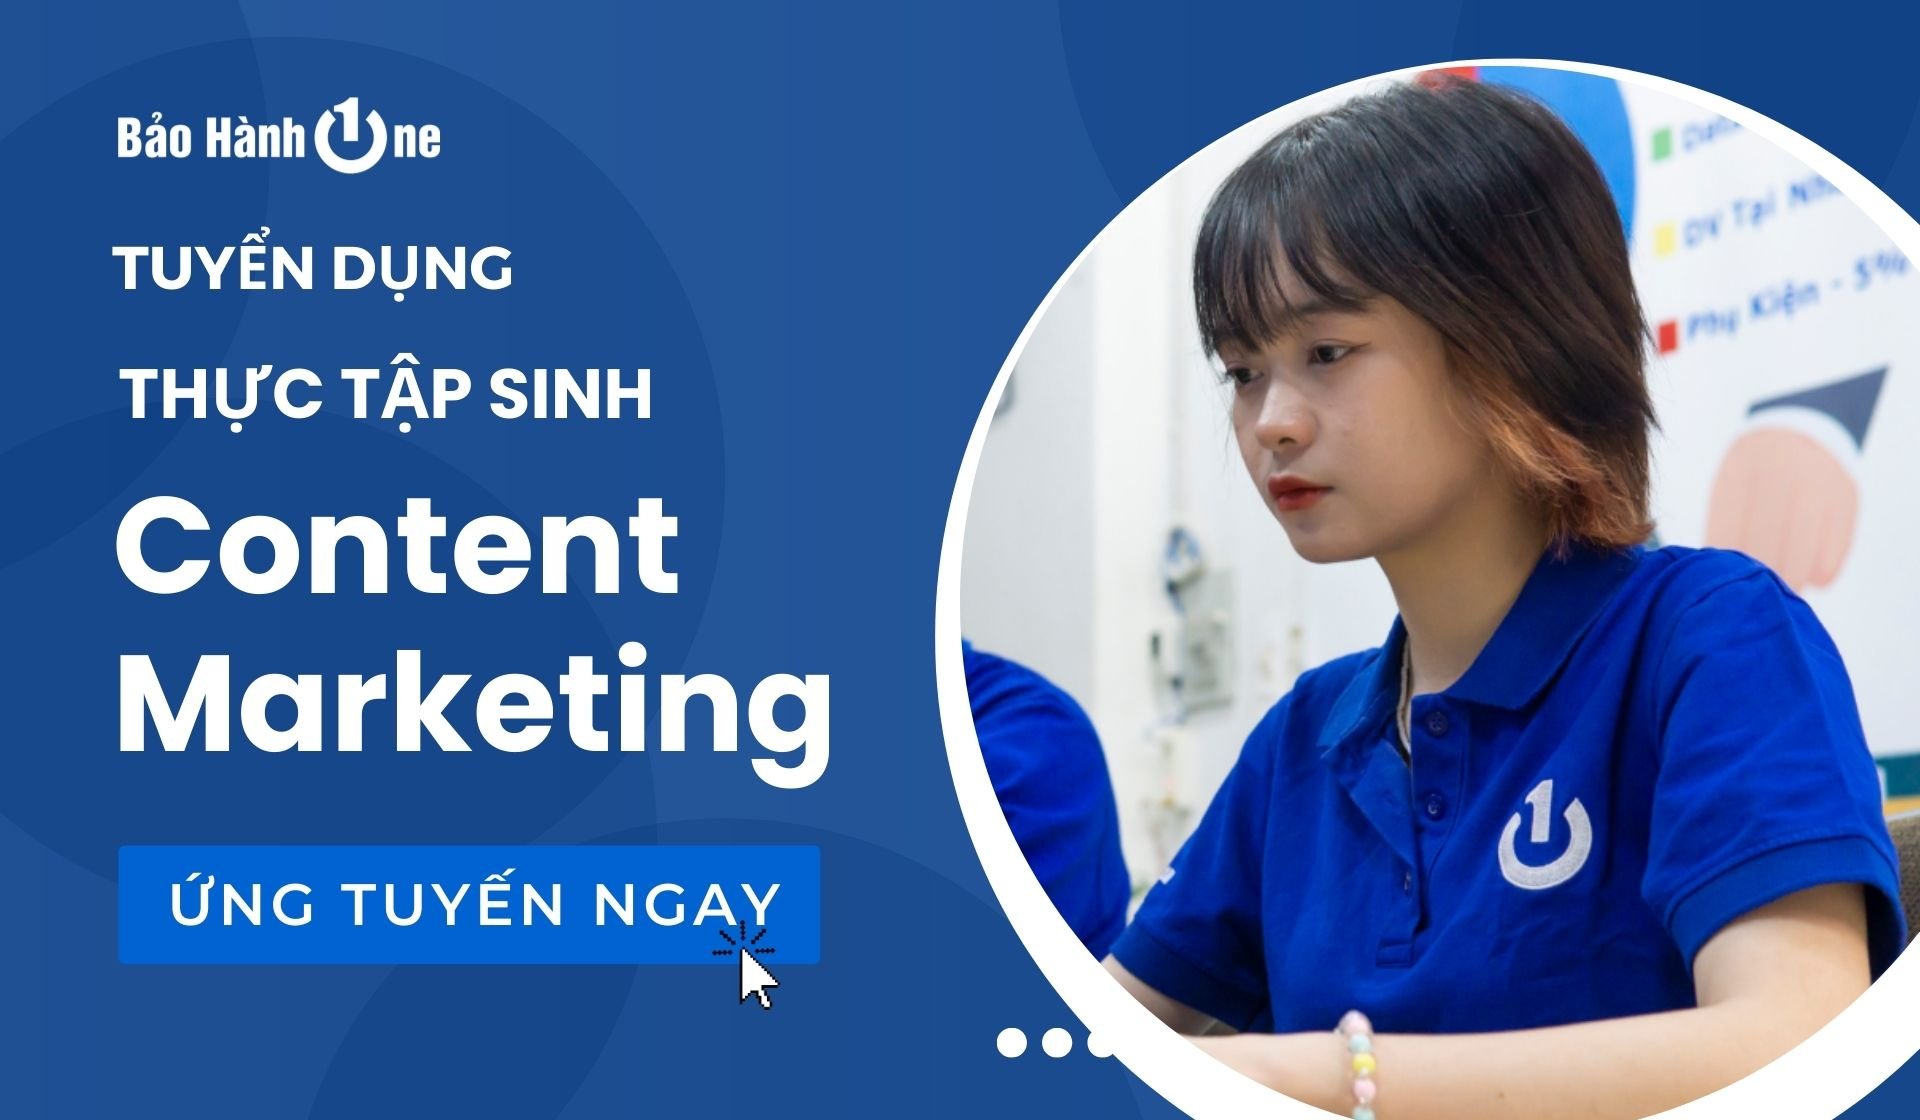 Tuyển dụng Thực Tập Sinh Content Marketing tại Quận Tân Phú